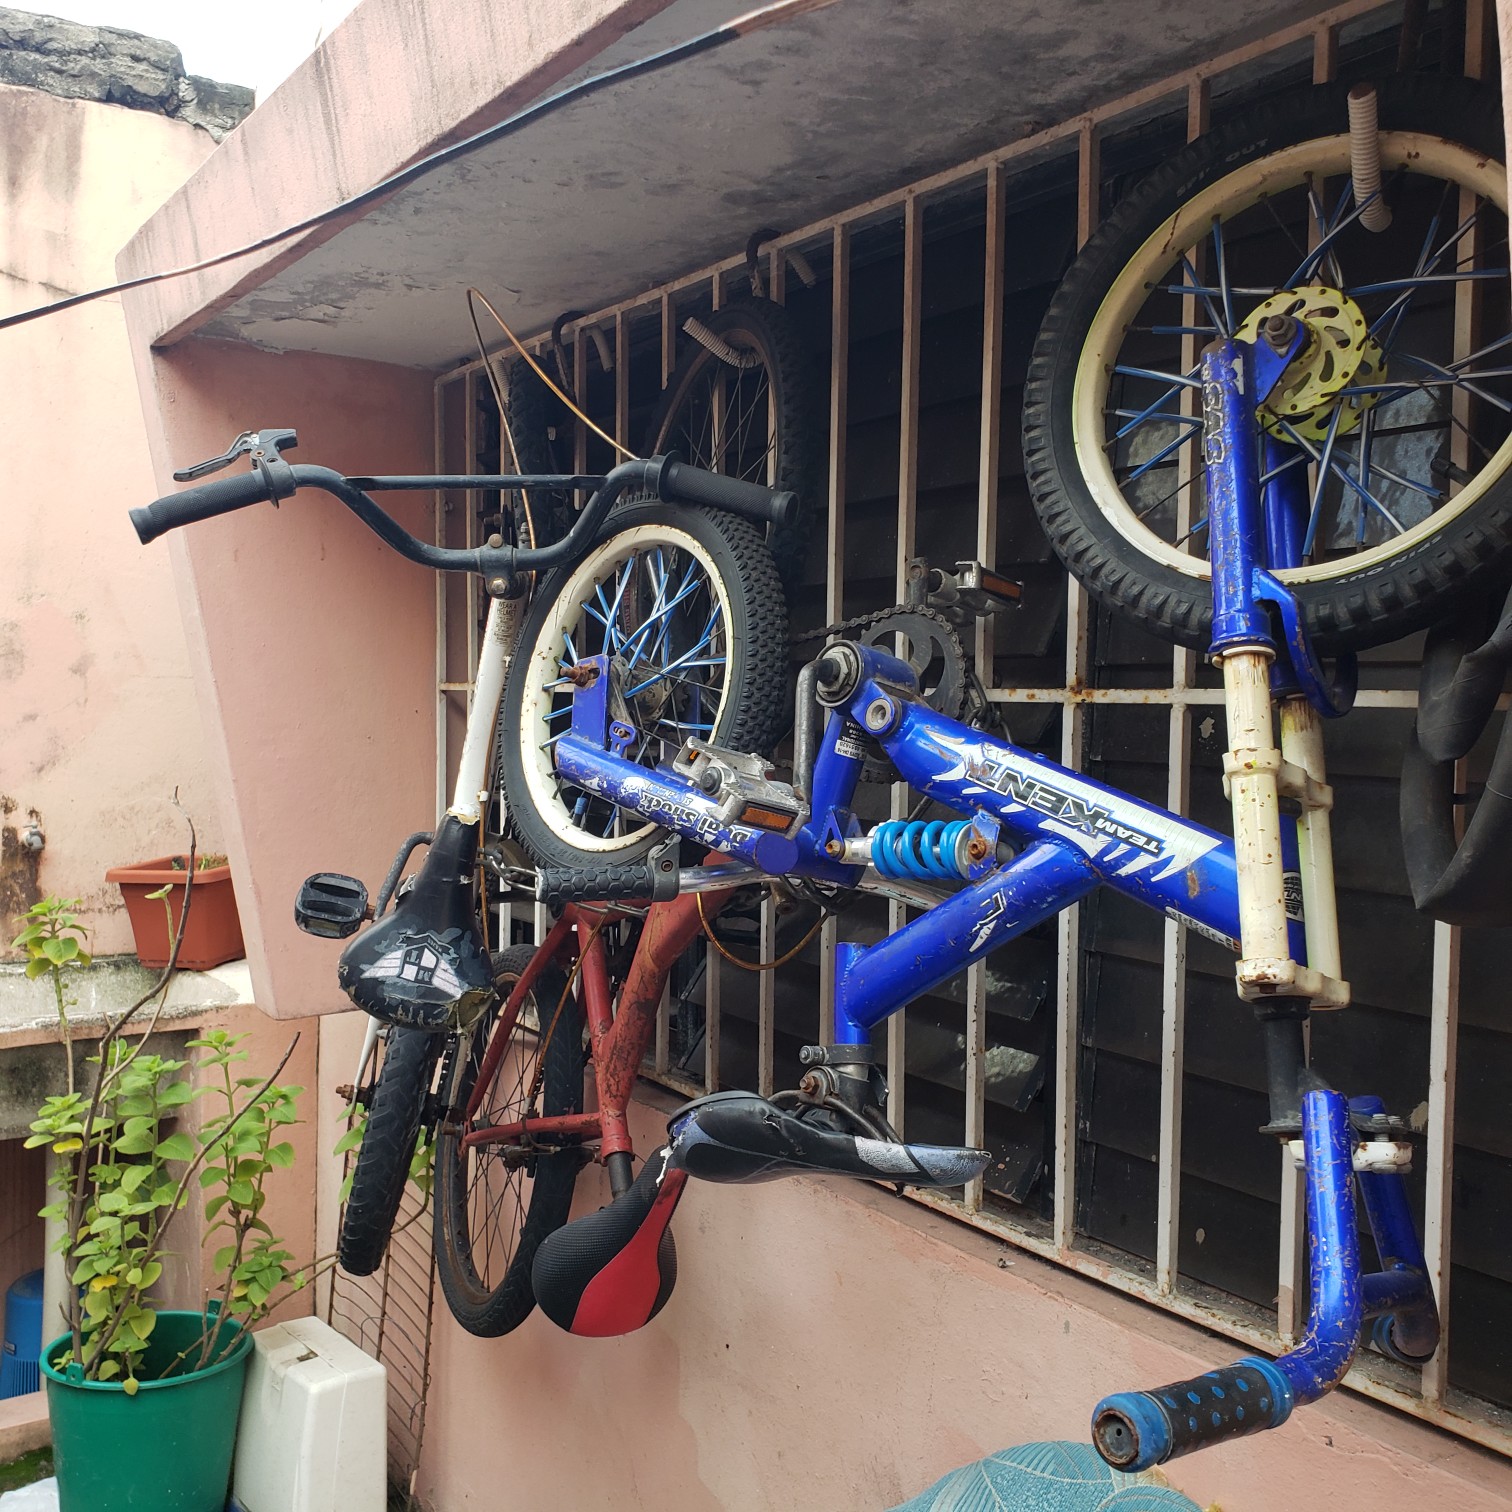 bicicletas y accesorios - Bicicletas aro 16 2